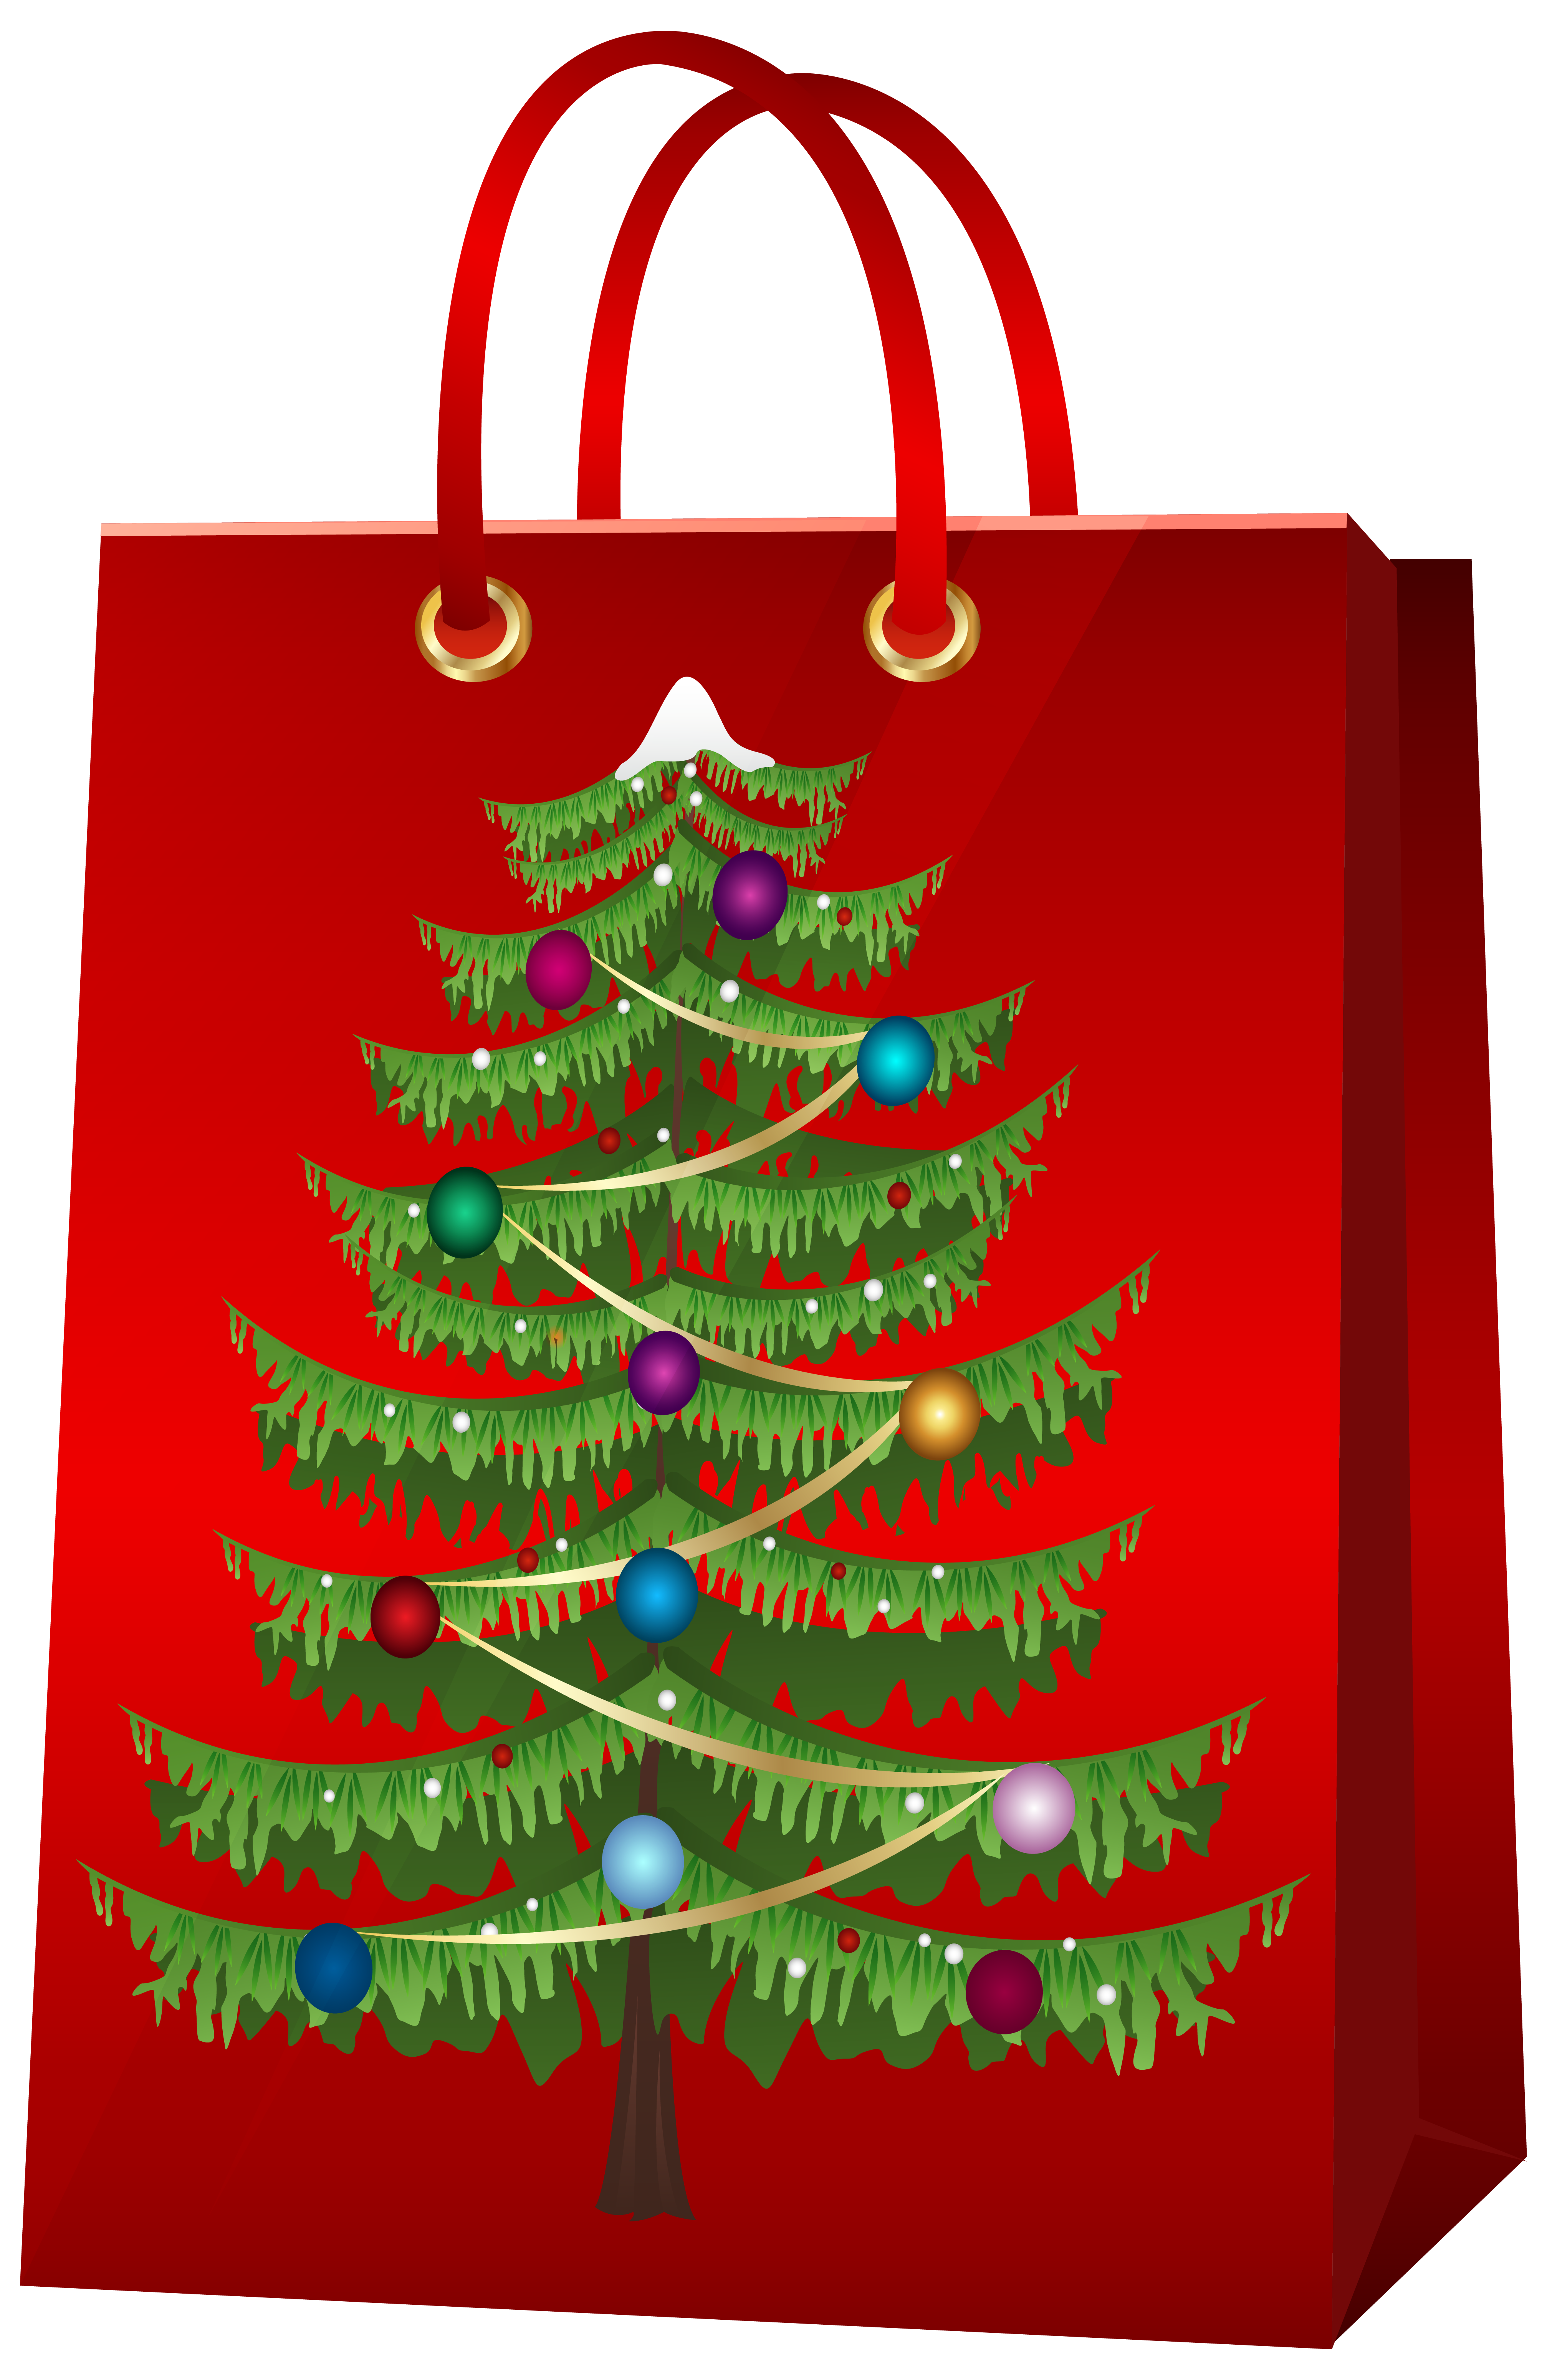 Christmas Gift Bag with Christmas Tree PNG Clip Art Image